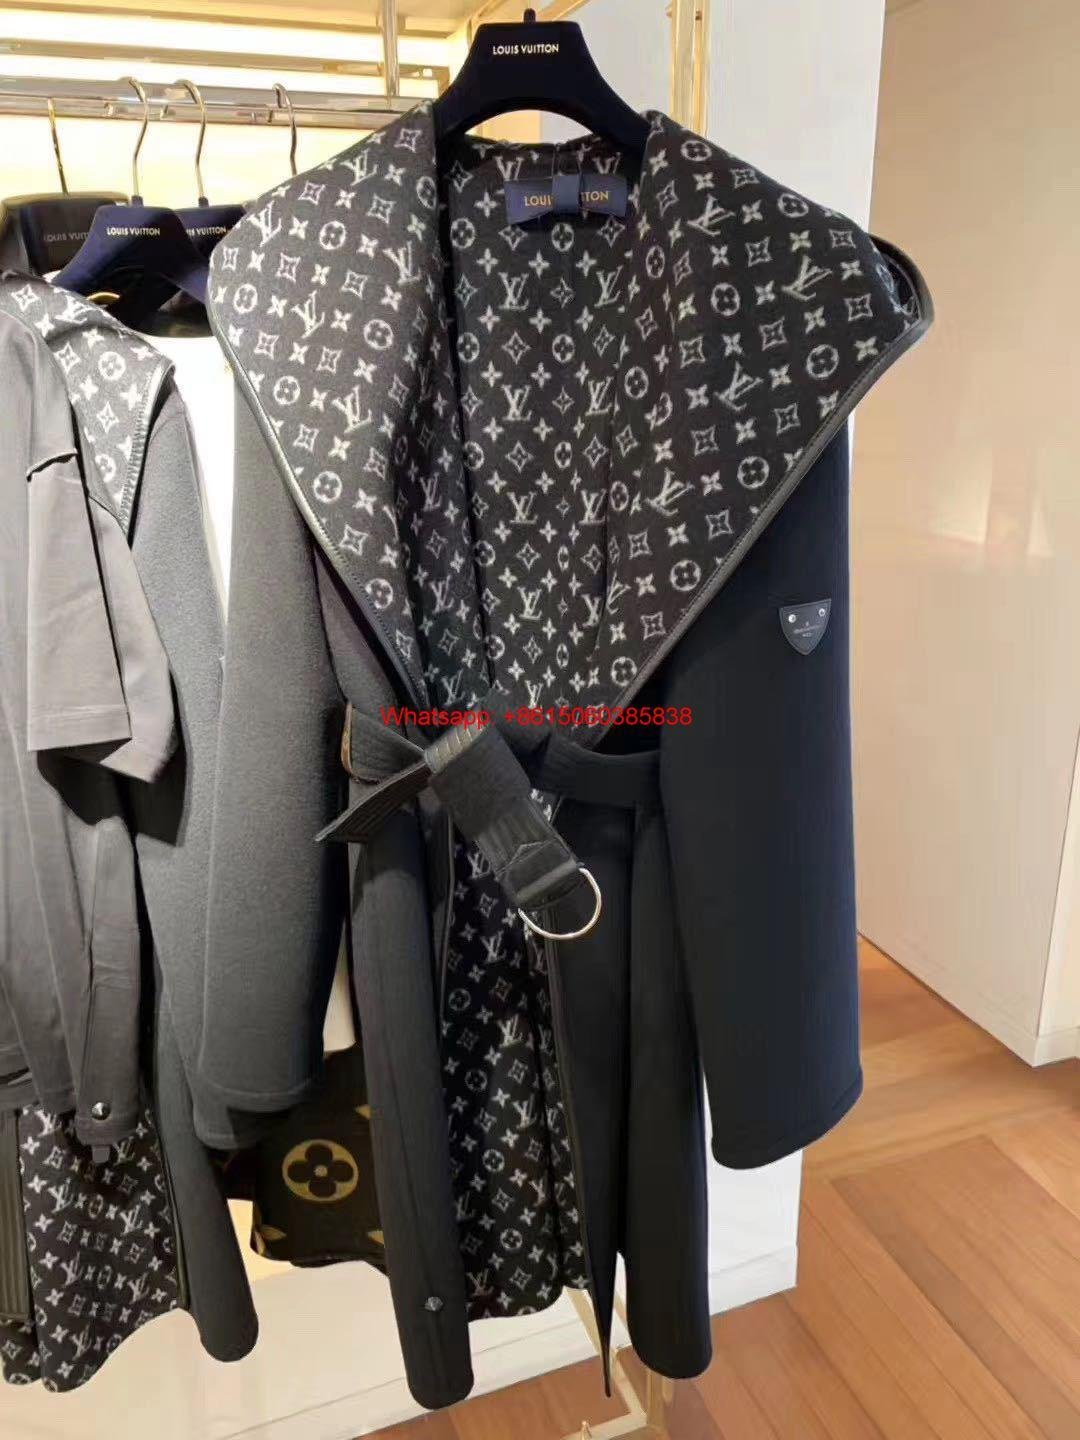 Louis Vuitton Reversible Damier Azur Hooded Wrap Coat